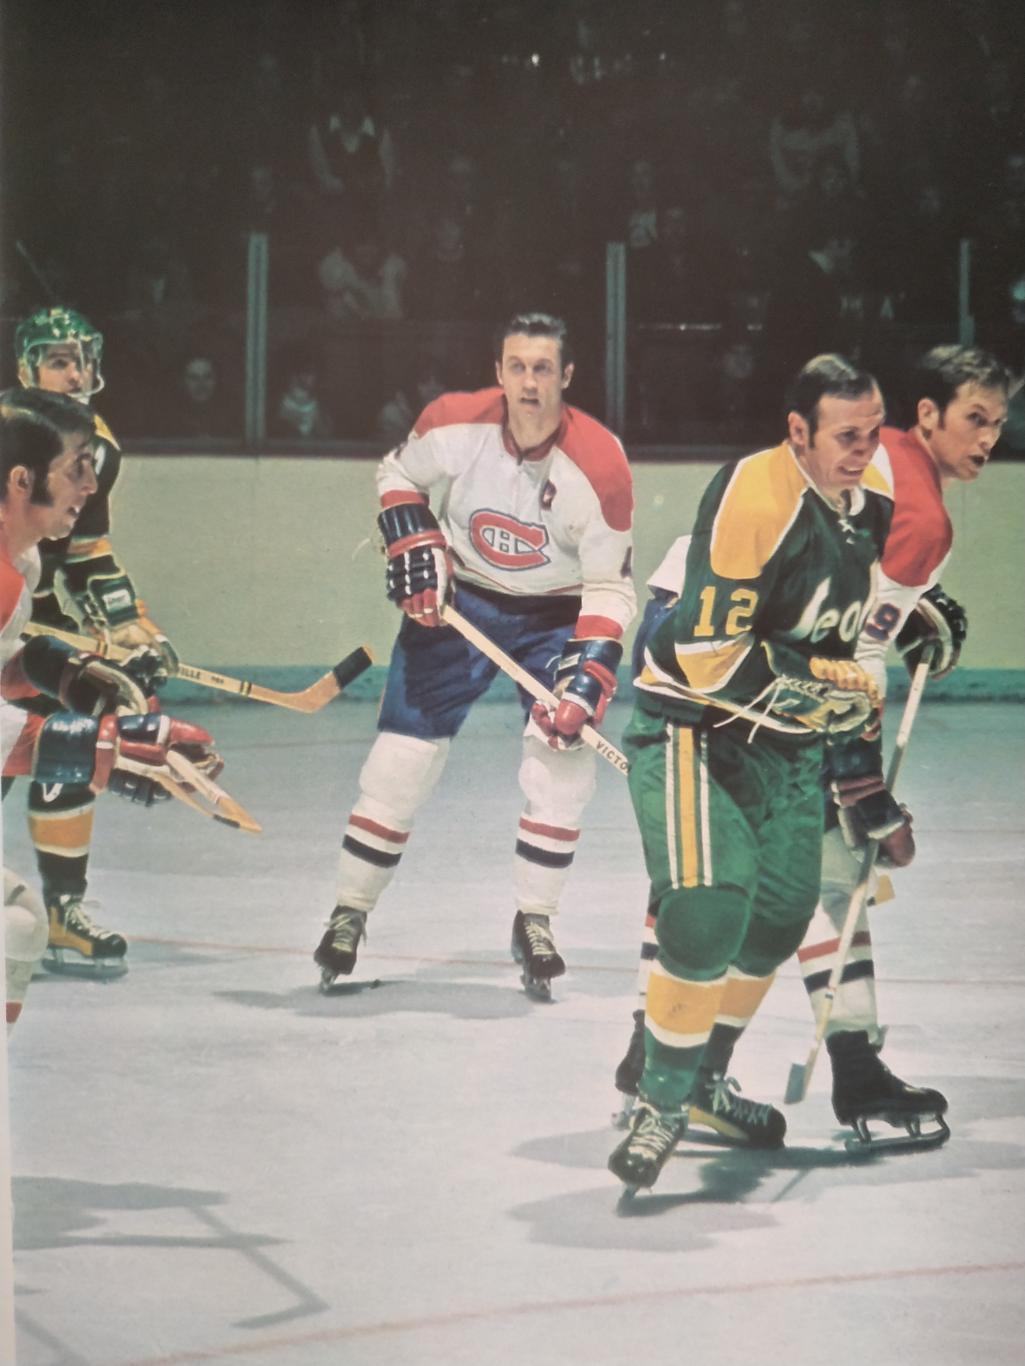 ХОККЕЙ ПРОГРАММА АЛЬБОМ КАЛИФОРНИЯ НХЛ NHL 1971 NOV.16 CALIFORNIA PROGRAM 3